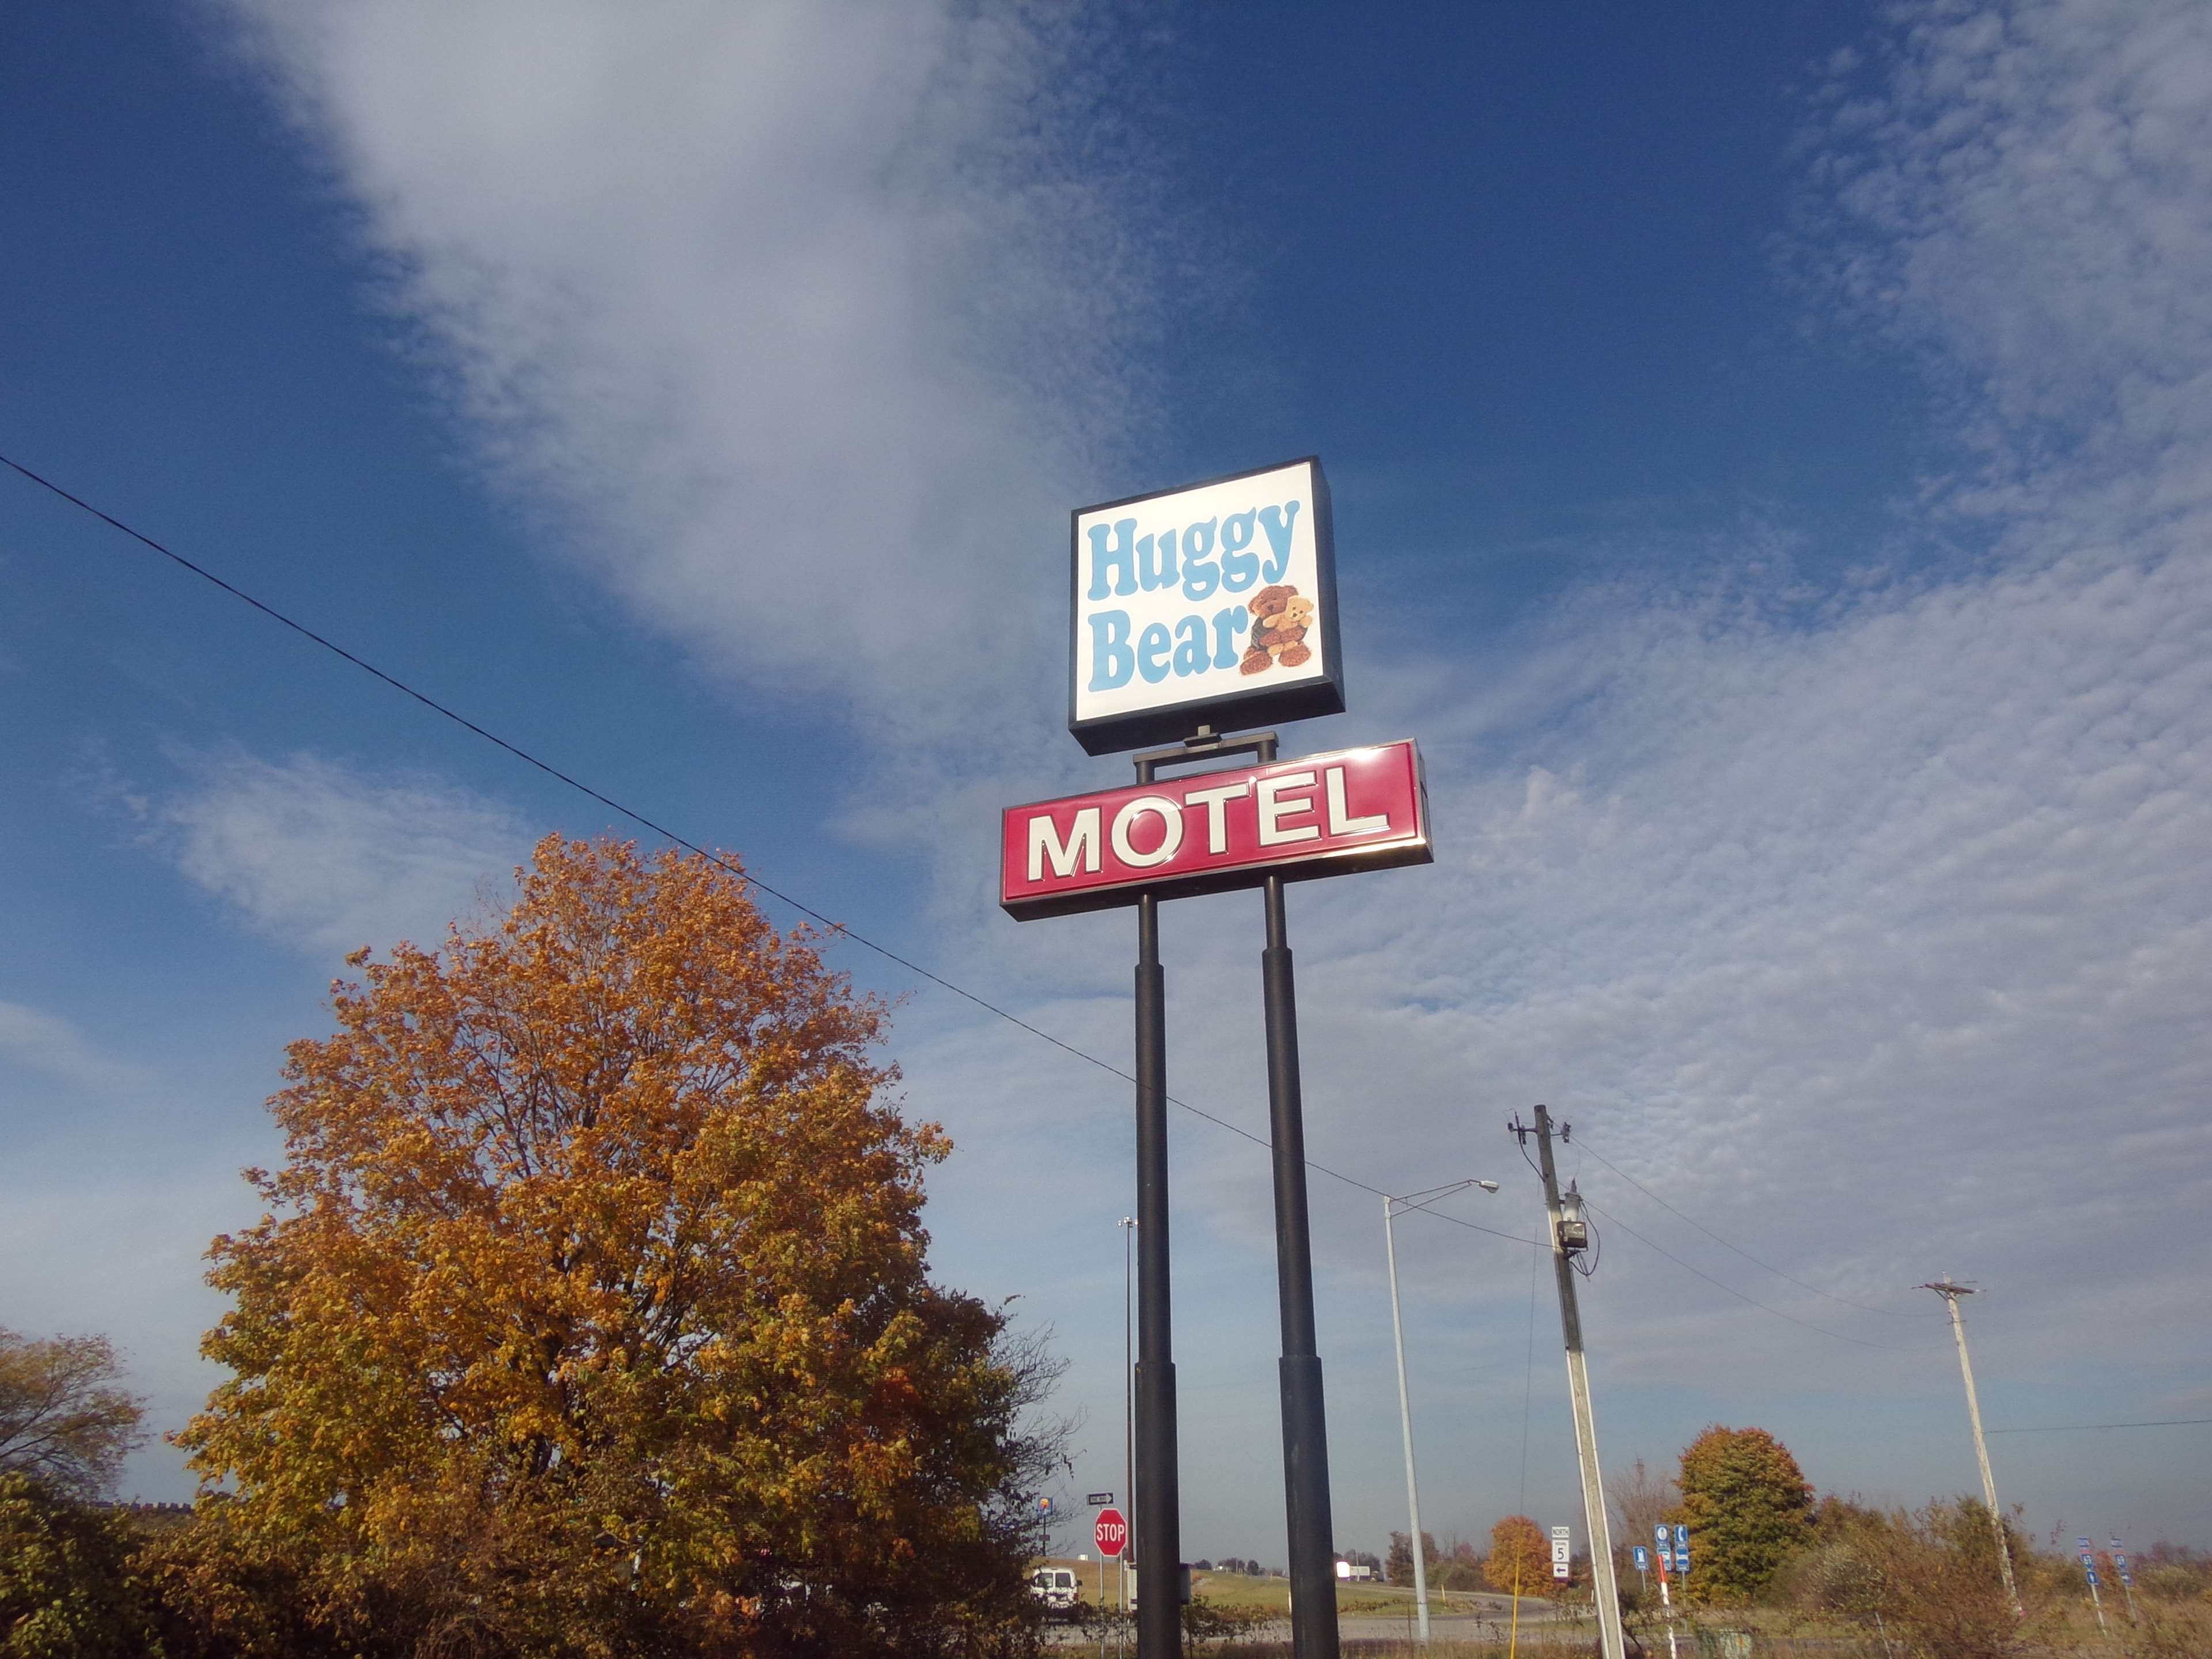 Huggy Bear Motel - Warren